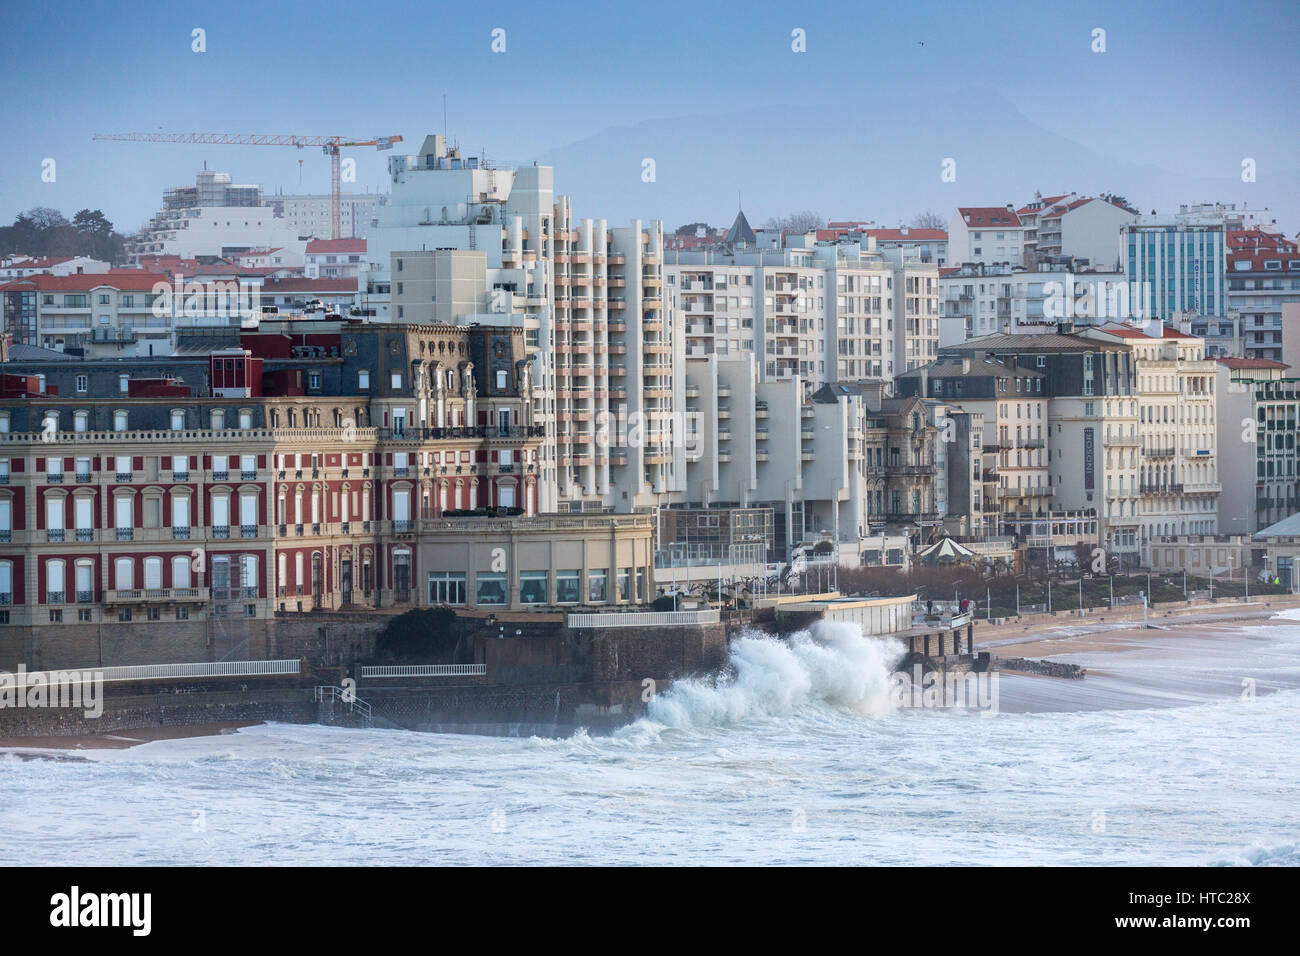 Die Stadt Biarritz durch ein stürmischer Tag (atlantischen Pyrenäen - Frankreich). Ville de Biarritz un Jour de Tempête (Pyrénées-Atlantiques - Aquitaine - Frankreich). Stockfoto